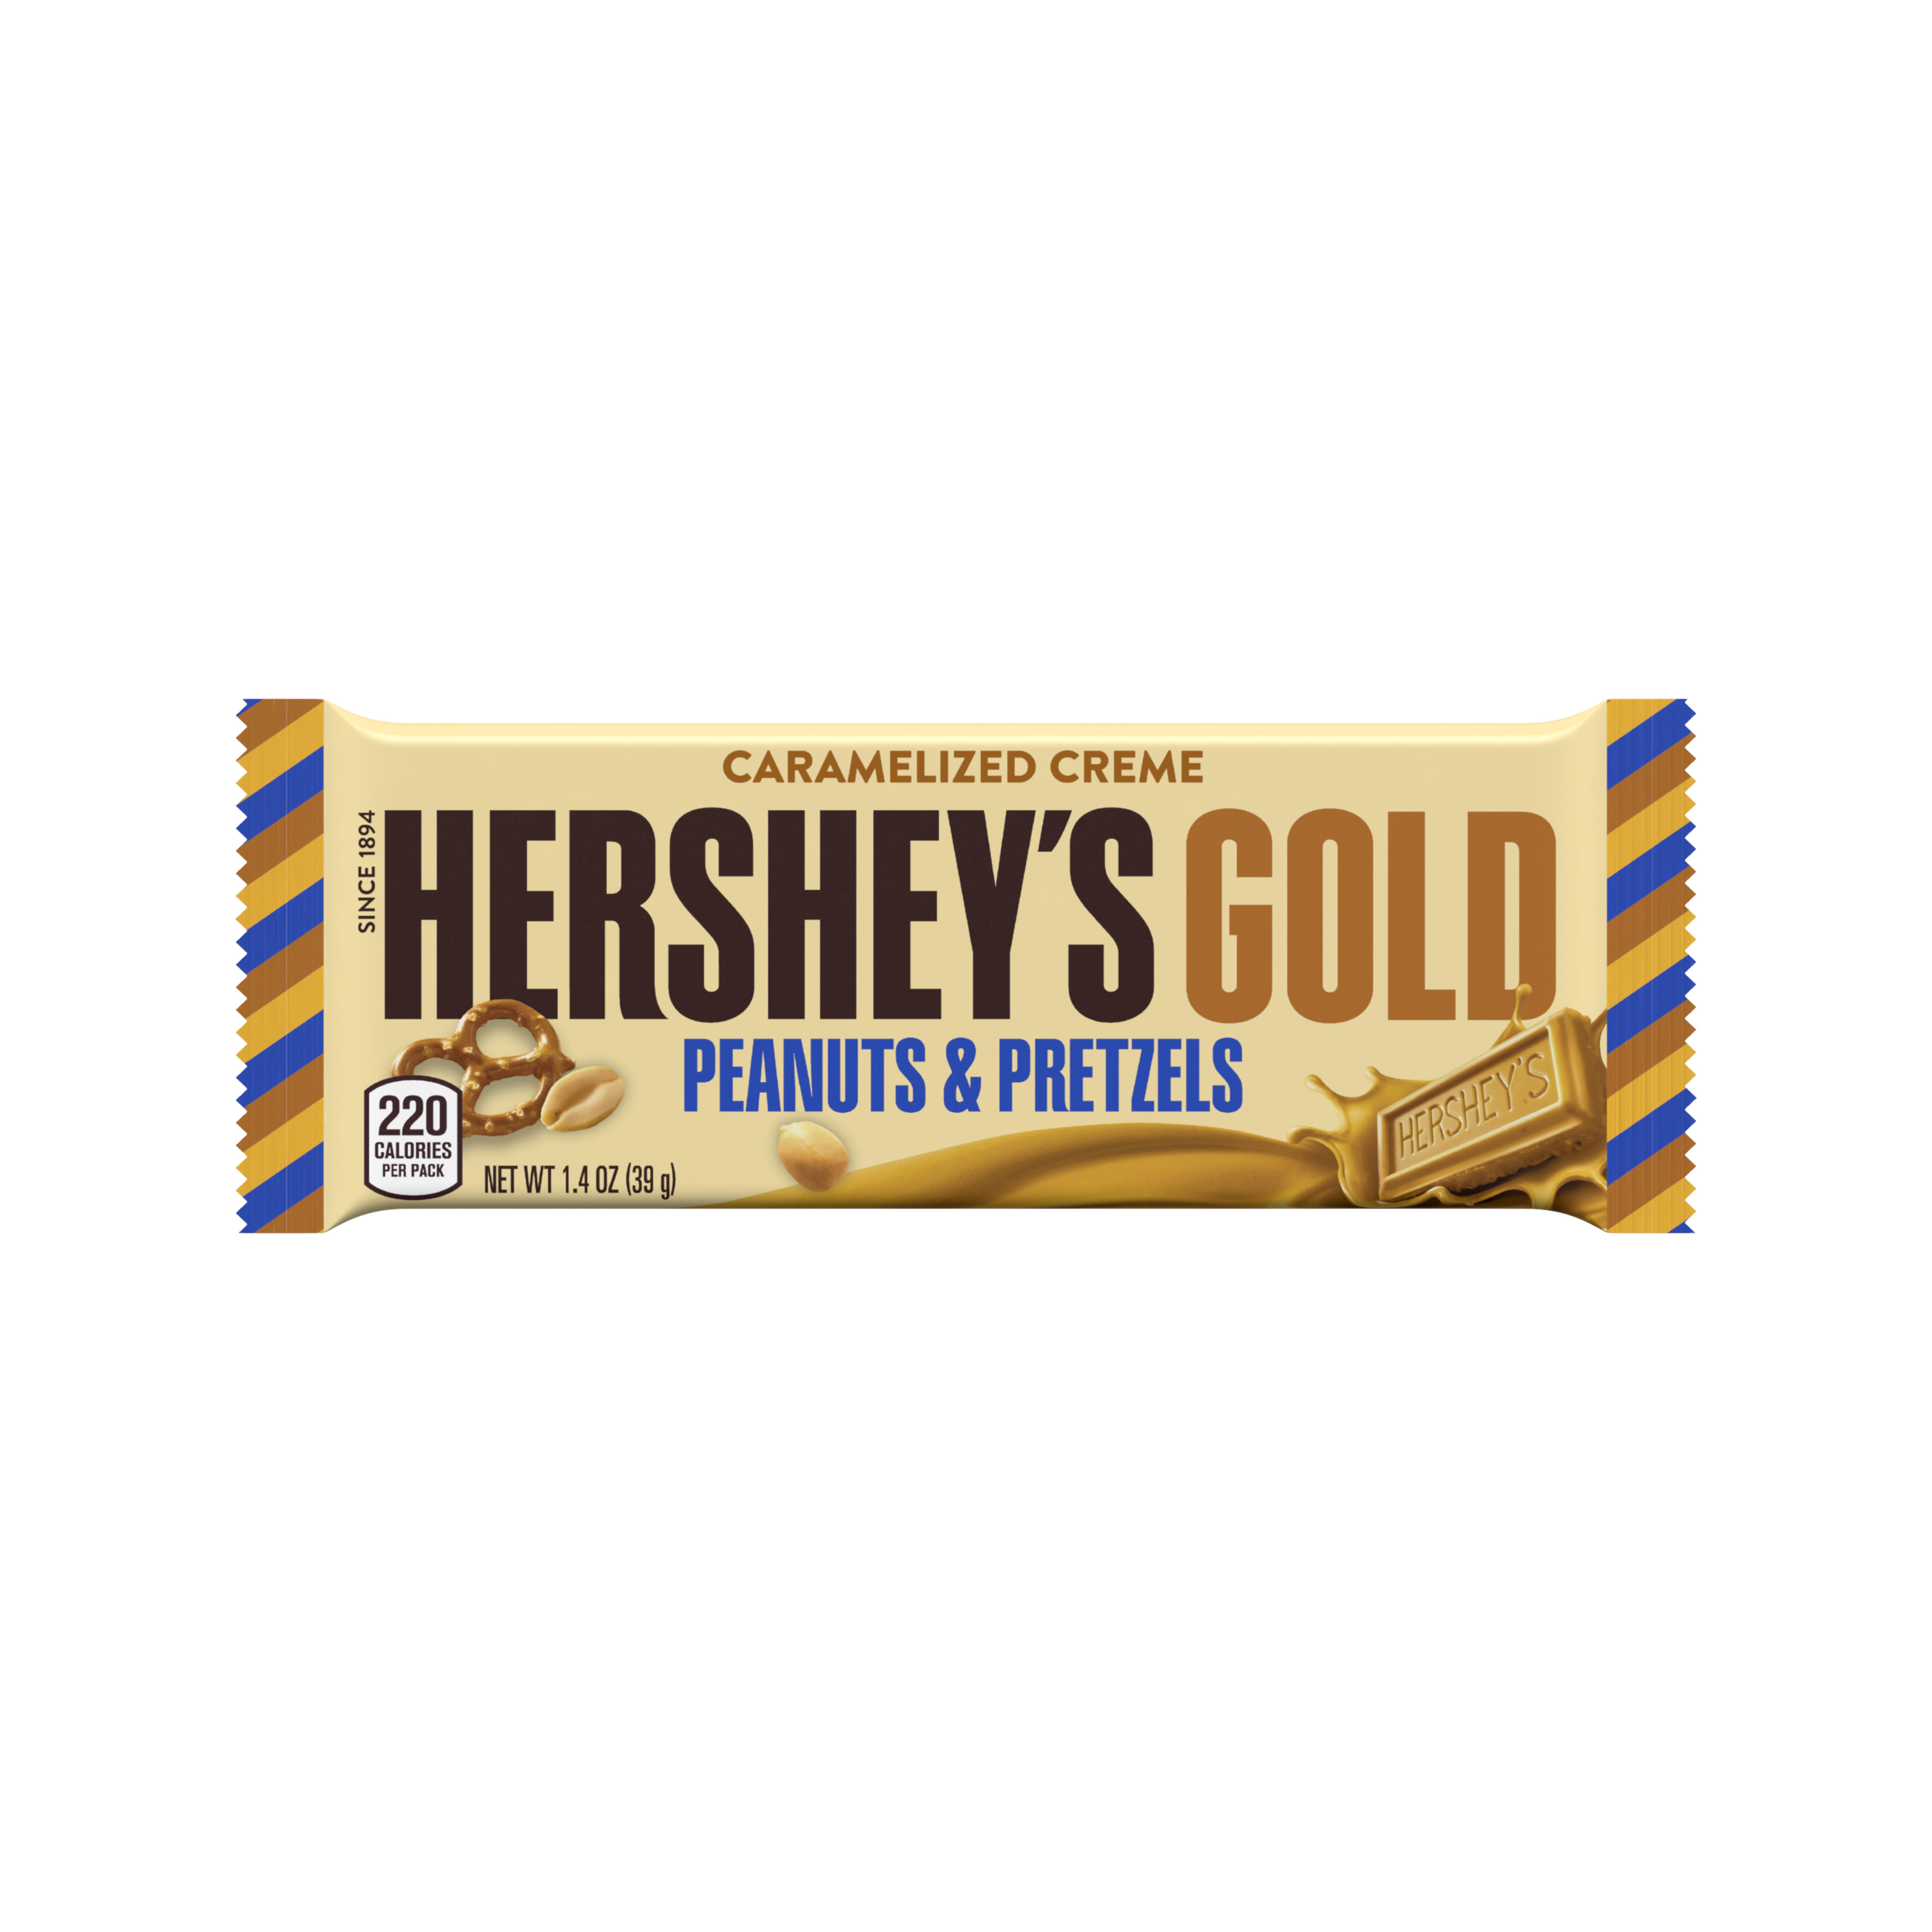 gold chocolate bar